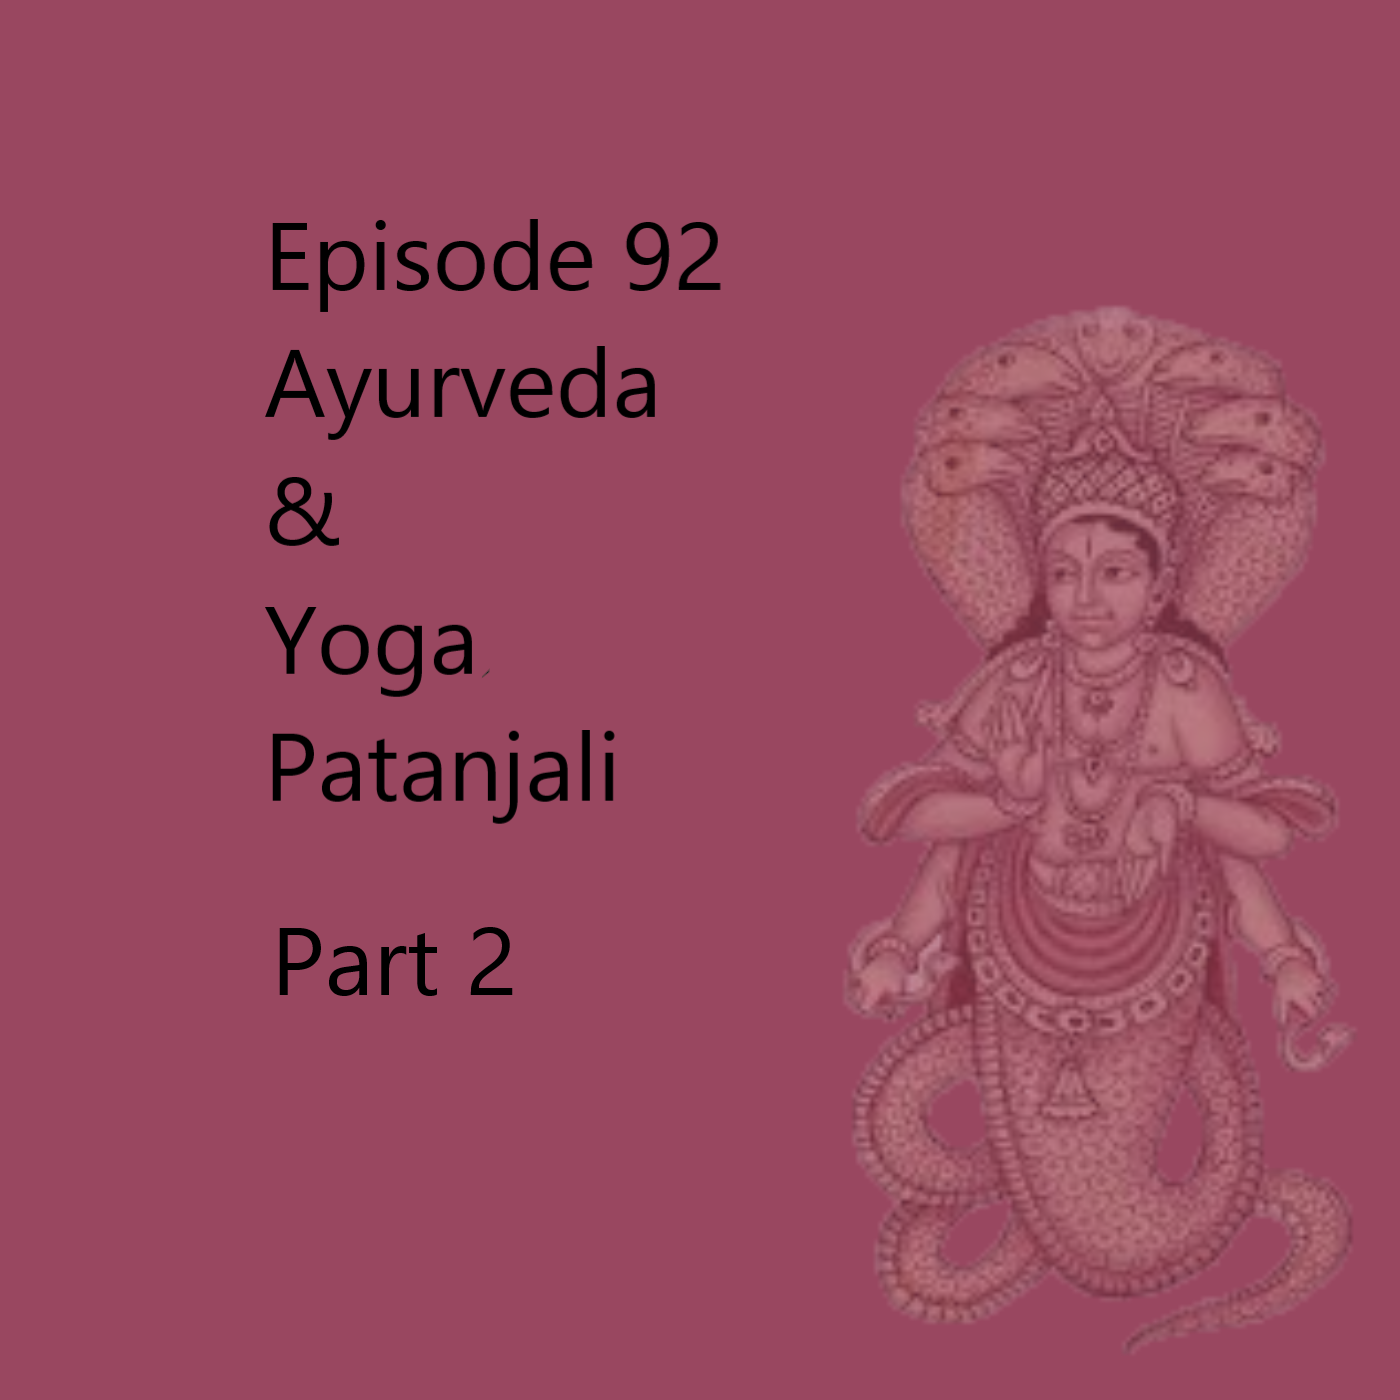 Episode 92 Patanjali Part 2